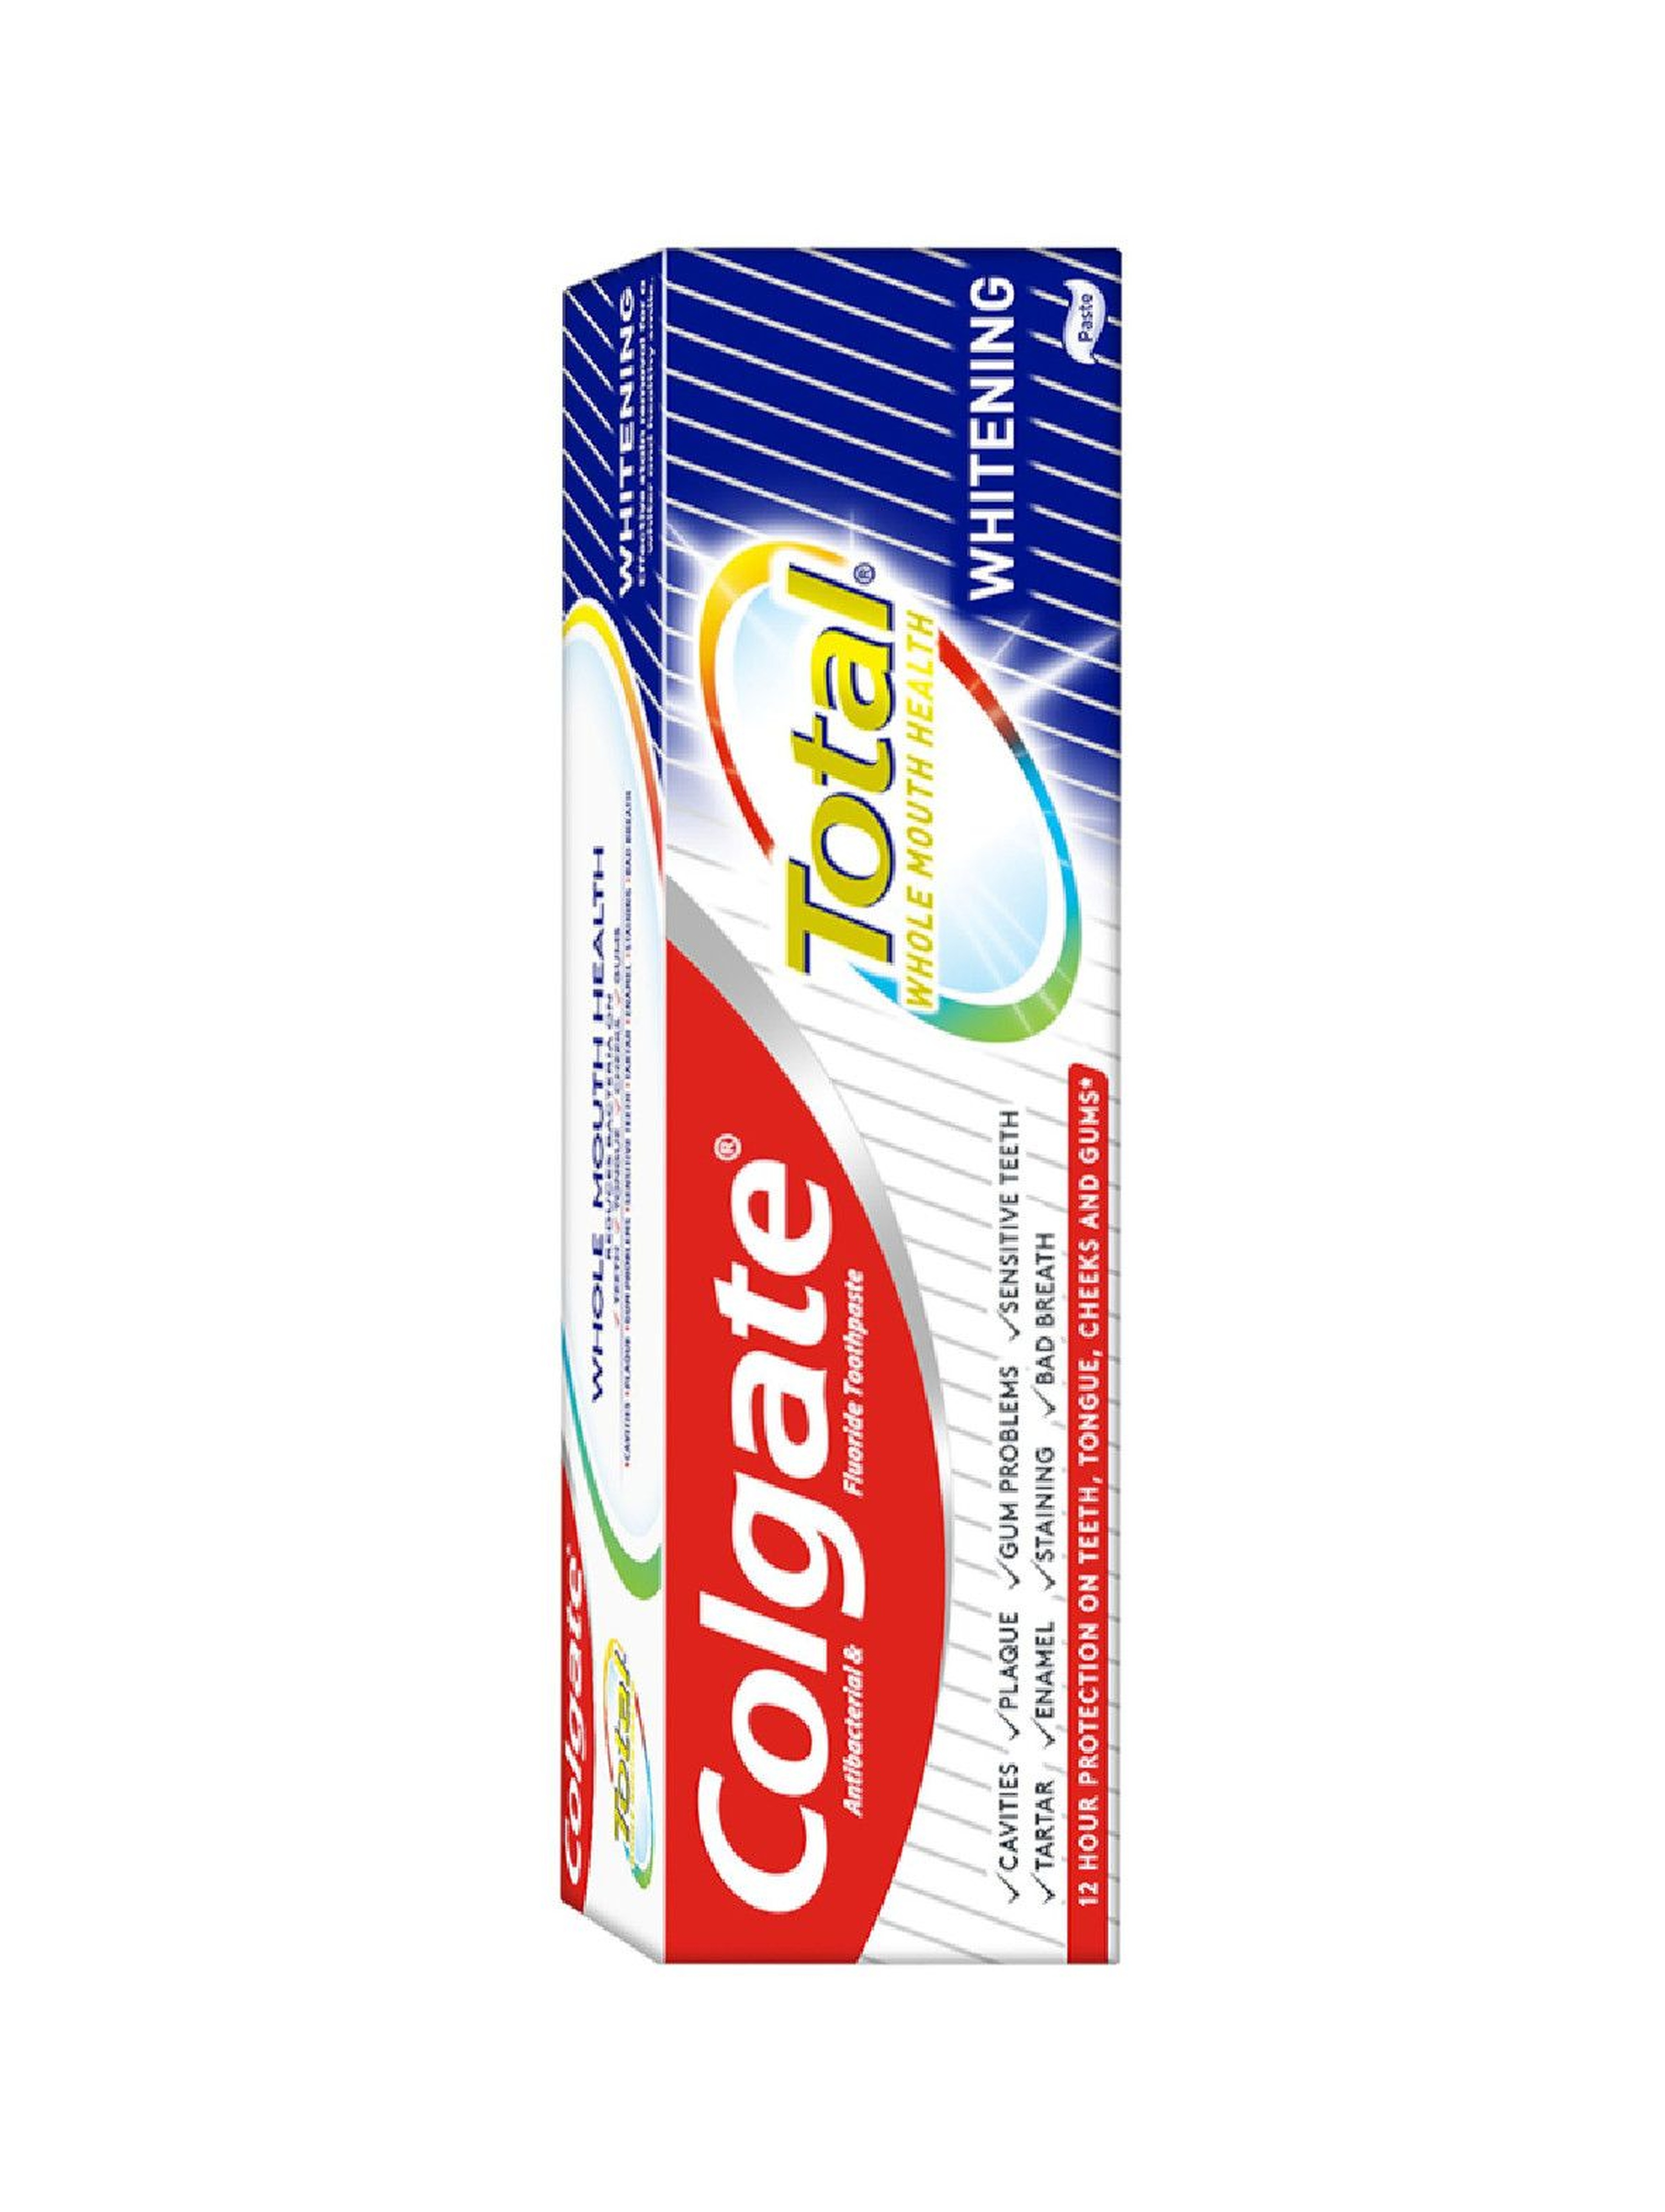 Colgate Total Wybielanie wybielająca pasta do zębów 75 ml